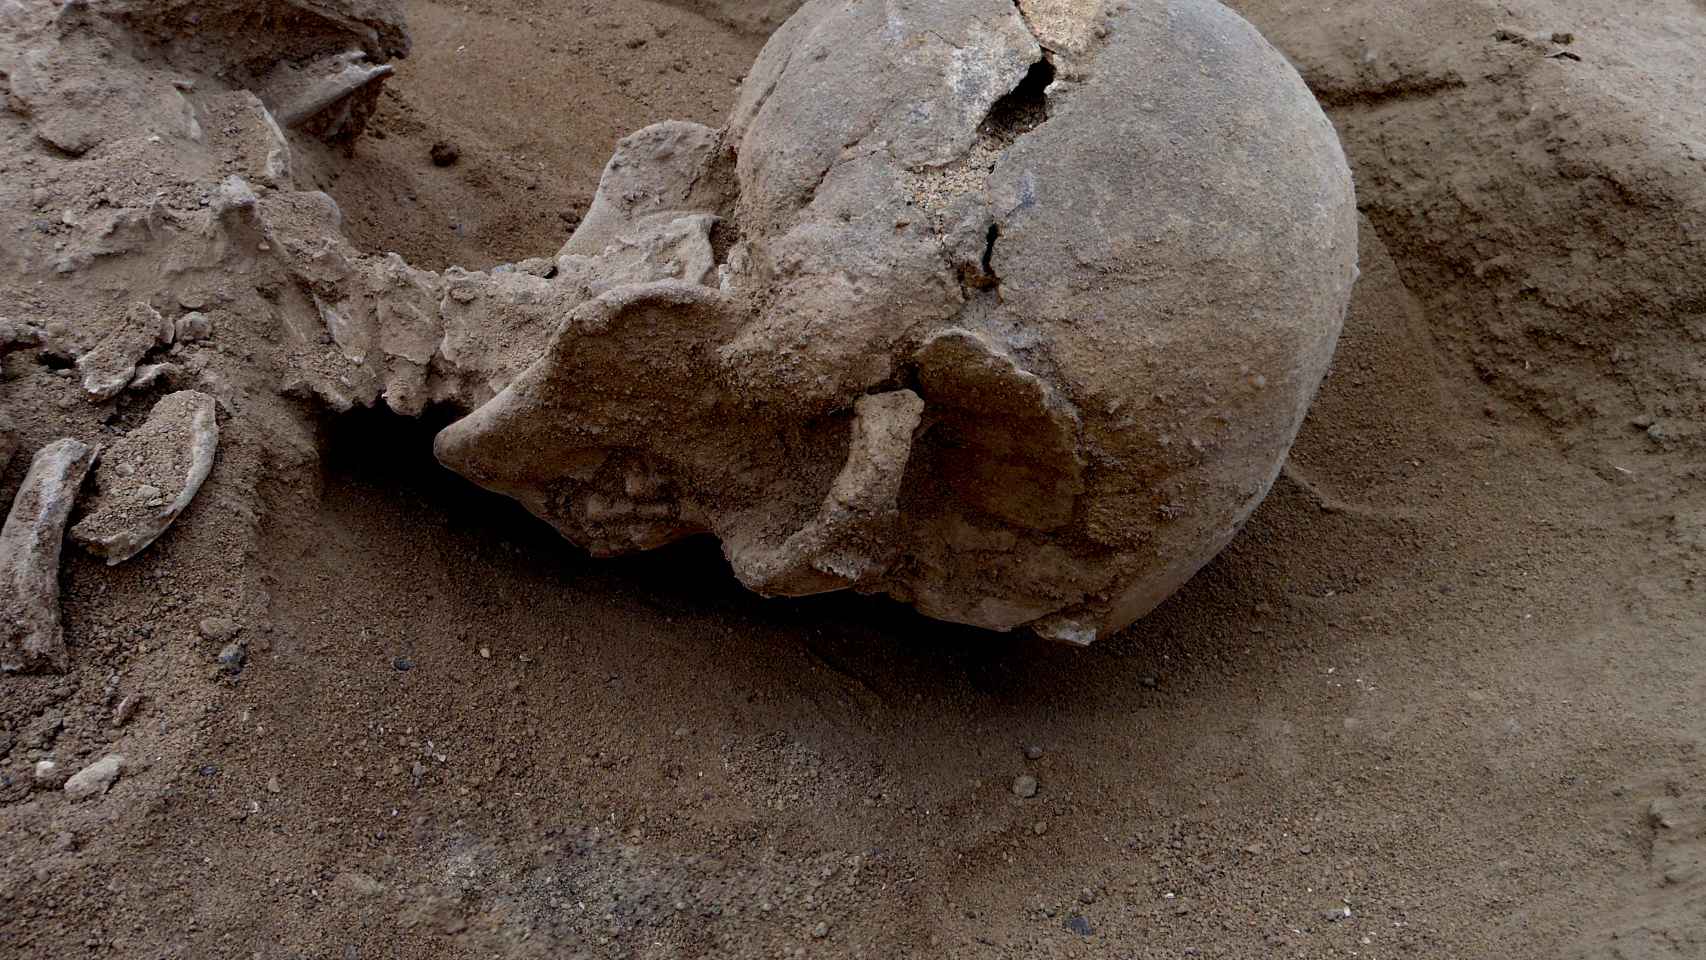 Detalle del cráneo fracturado de uno de los esqueletos hallados en Nataruk.